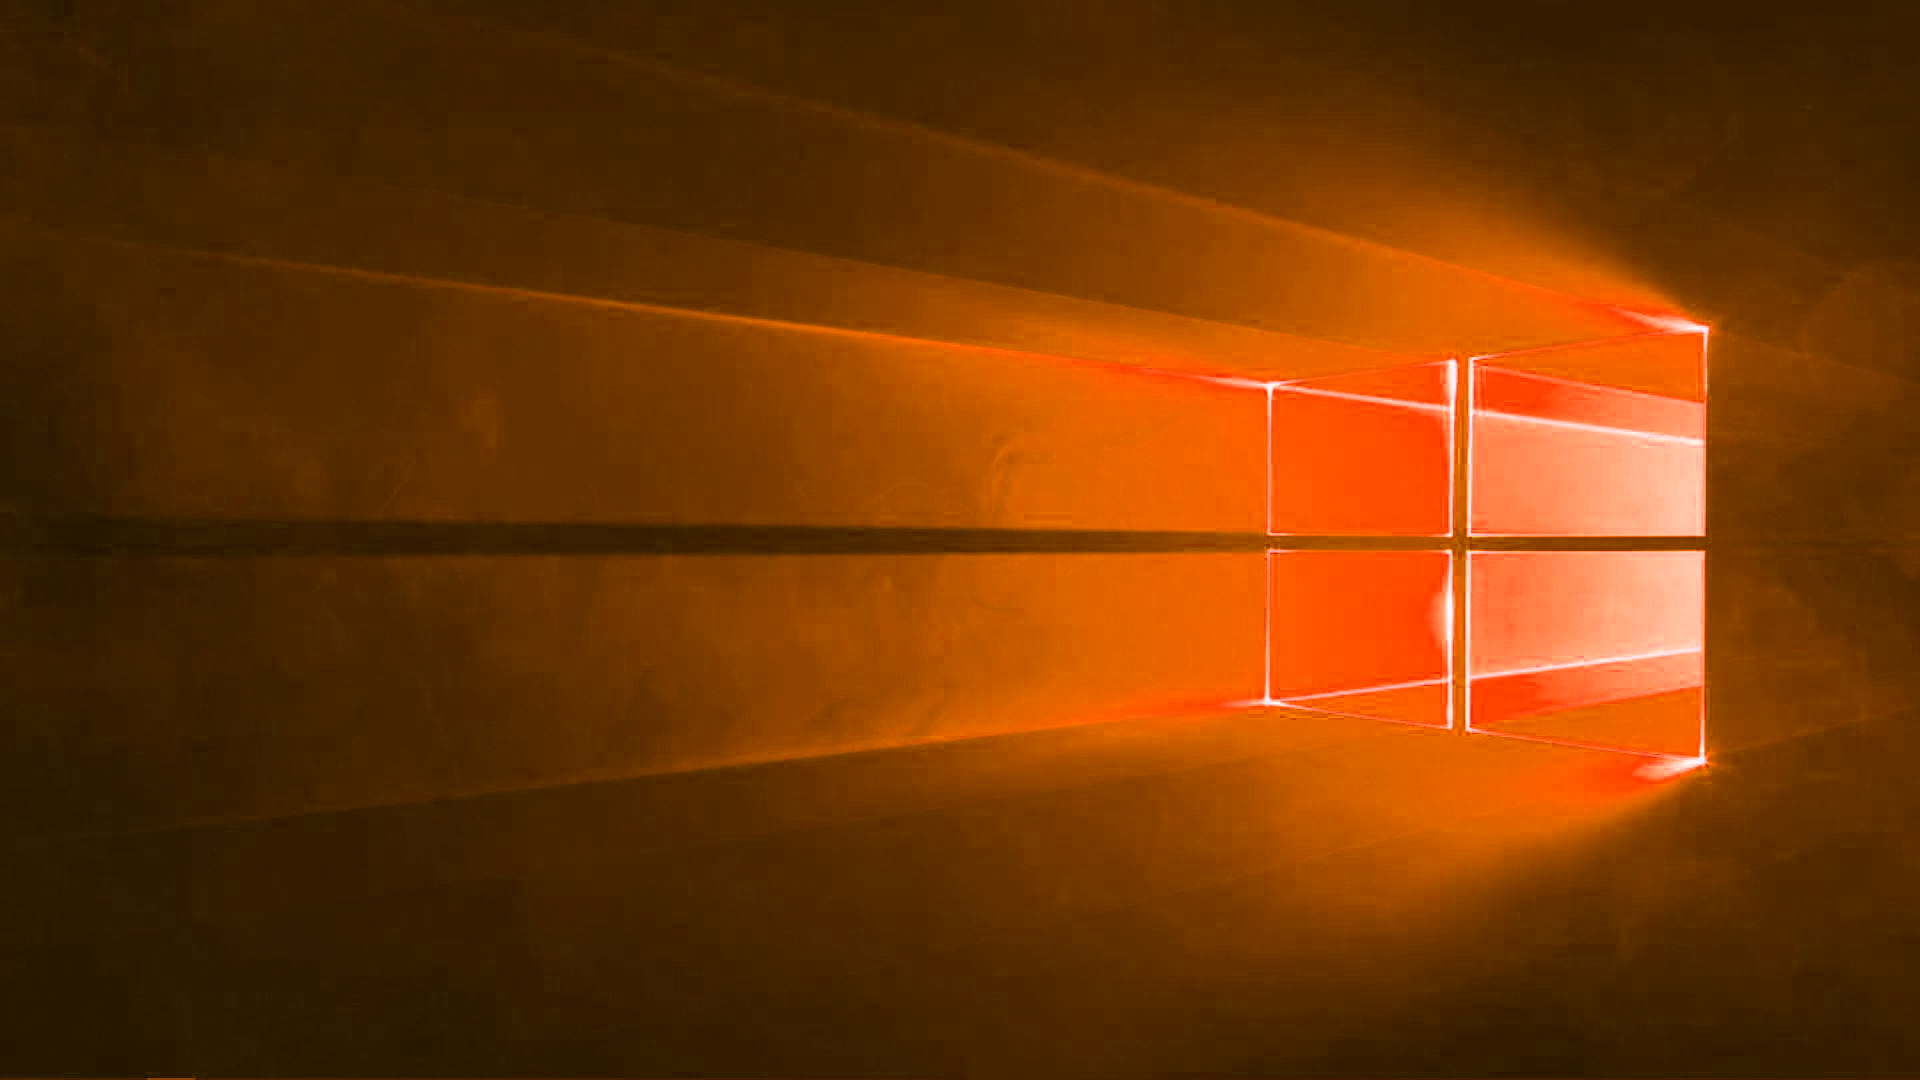 Hình nền Windows 10 màu Cam là sự lựa chọn hoàn hảo cho những người yêu thích sự nổi bật và đặc biệt. Sắc cam tươi sáng sẽ tạo cái nhìn độc đáo cho màn hình của bạn, giúp bạn tạo ra một môi trường làm việc tràn đầy năng lượng. Hãy tải về để thử nghiệm ngay hôm nay.